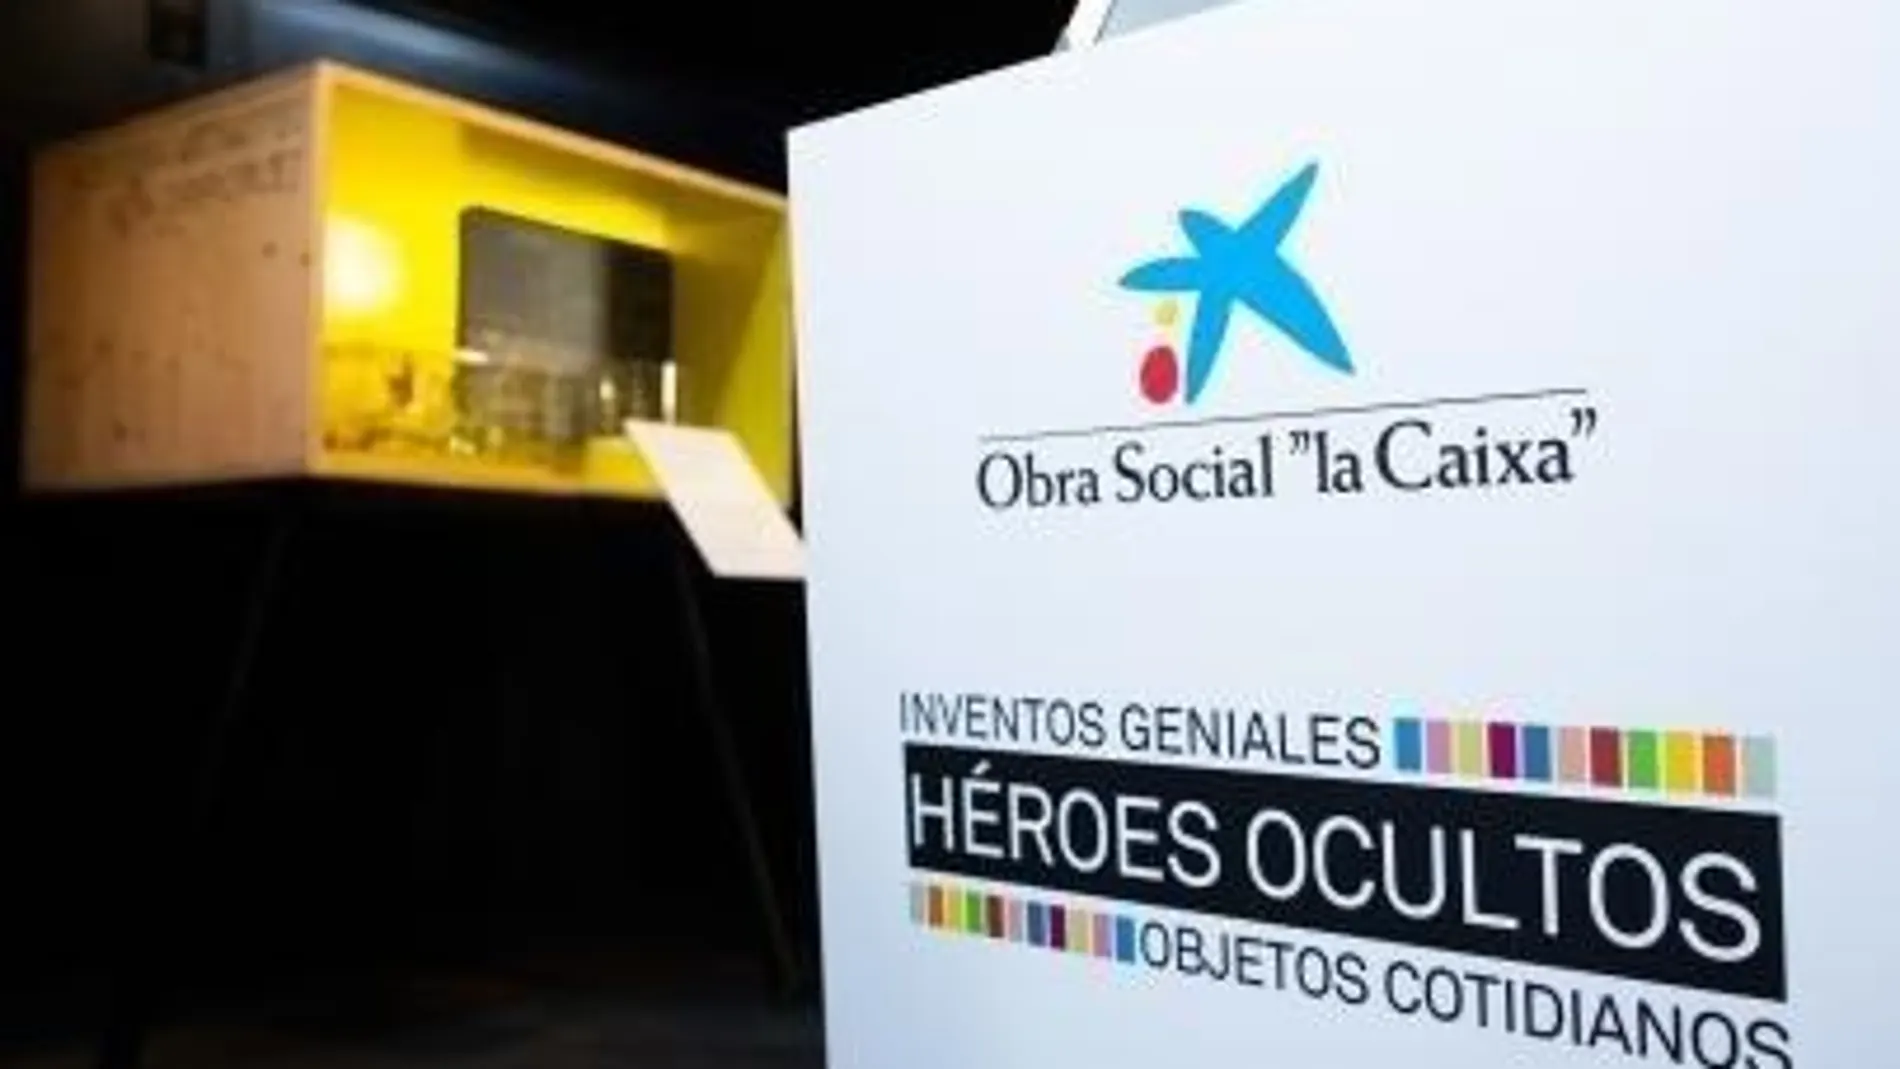 Exposición "Héroes ocultos. Inventos geniales"/ La Razón